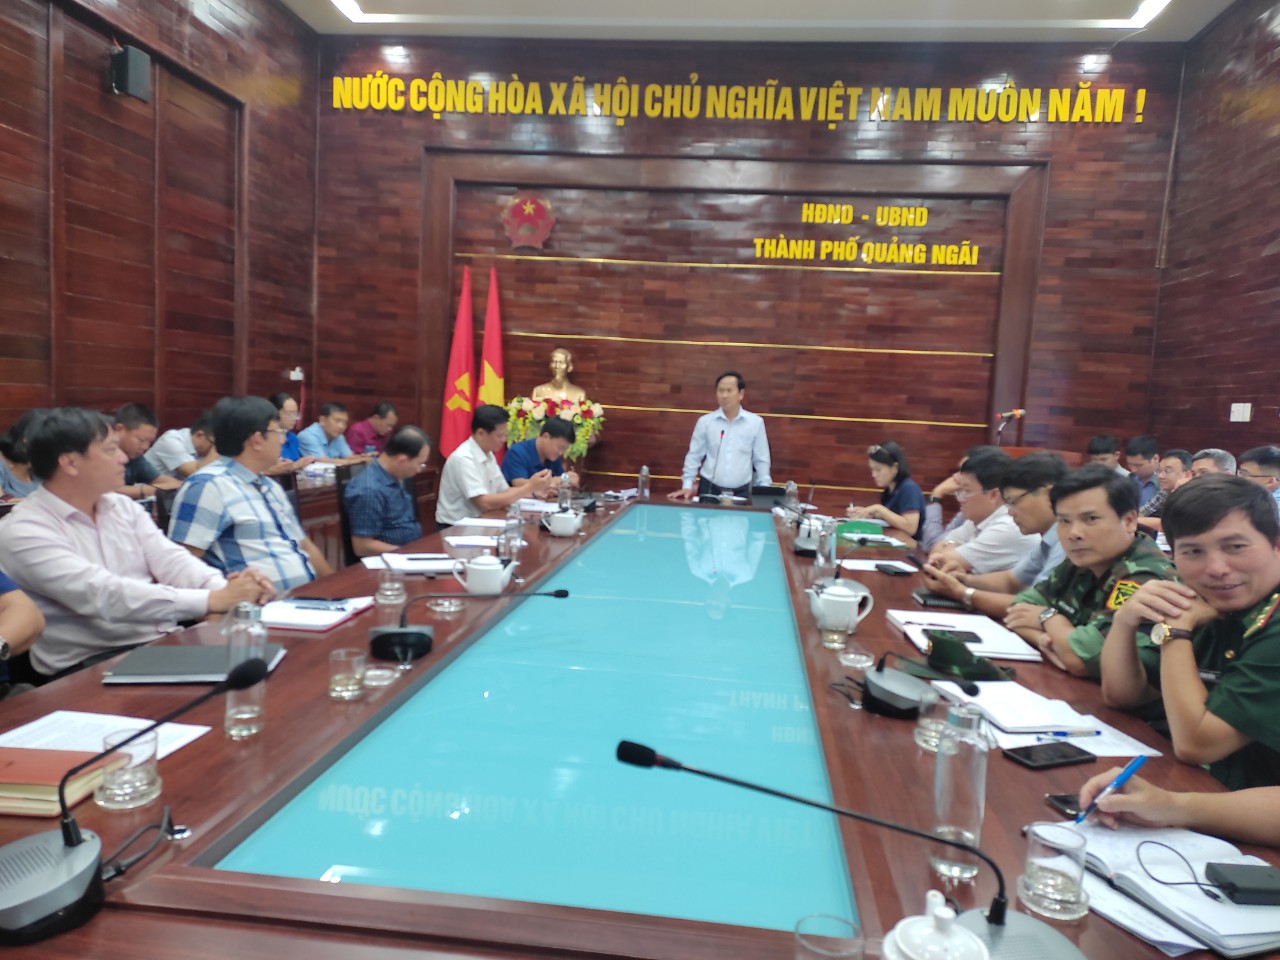 Thành phố Quảng Ngãi triển khai công tác ứng phó bão số 4